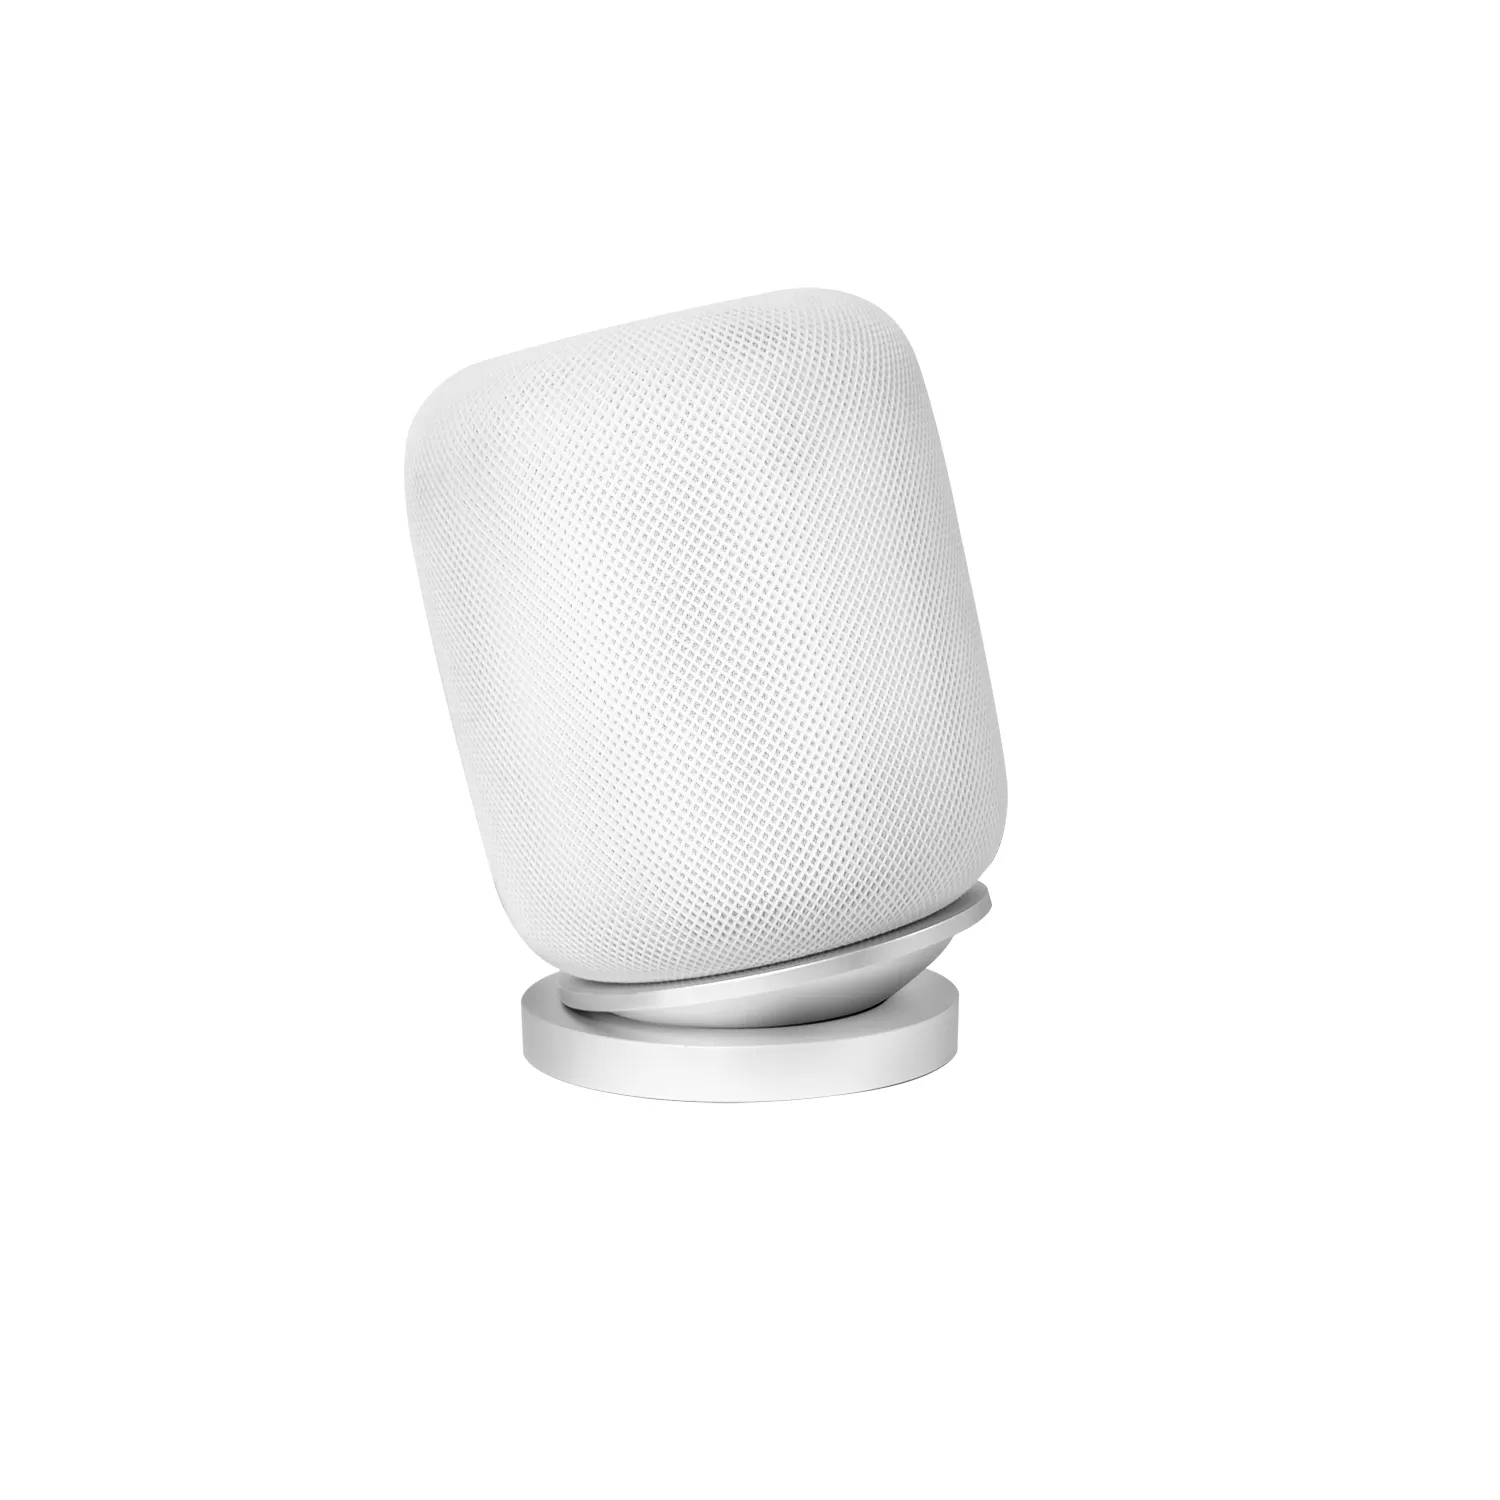 Speaker Accessories Holder Stand Flat Base Smart Speaker Desktop Sound Isolation Platform Anti Vibration for Home-Pod2